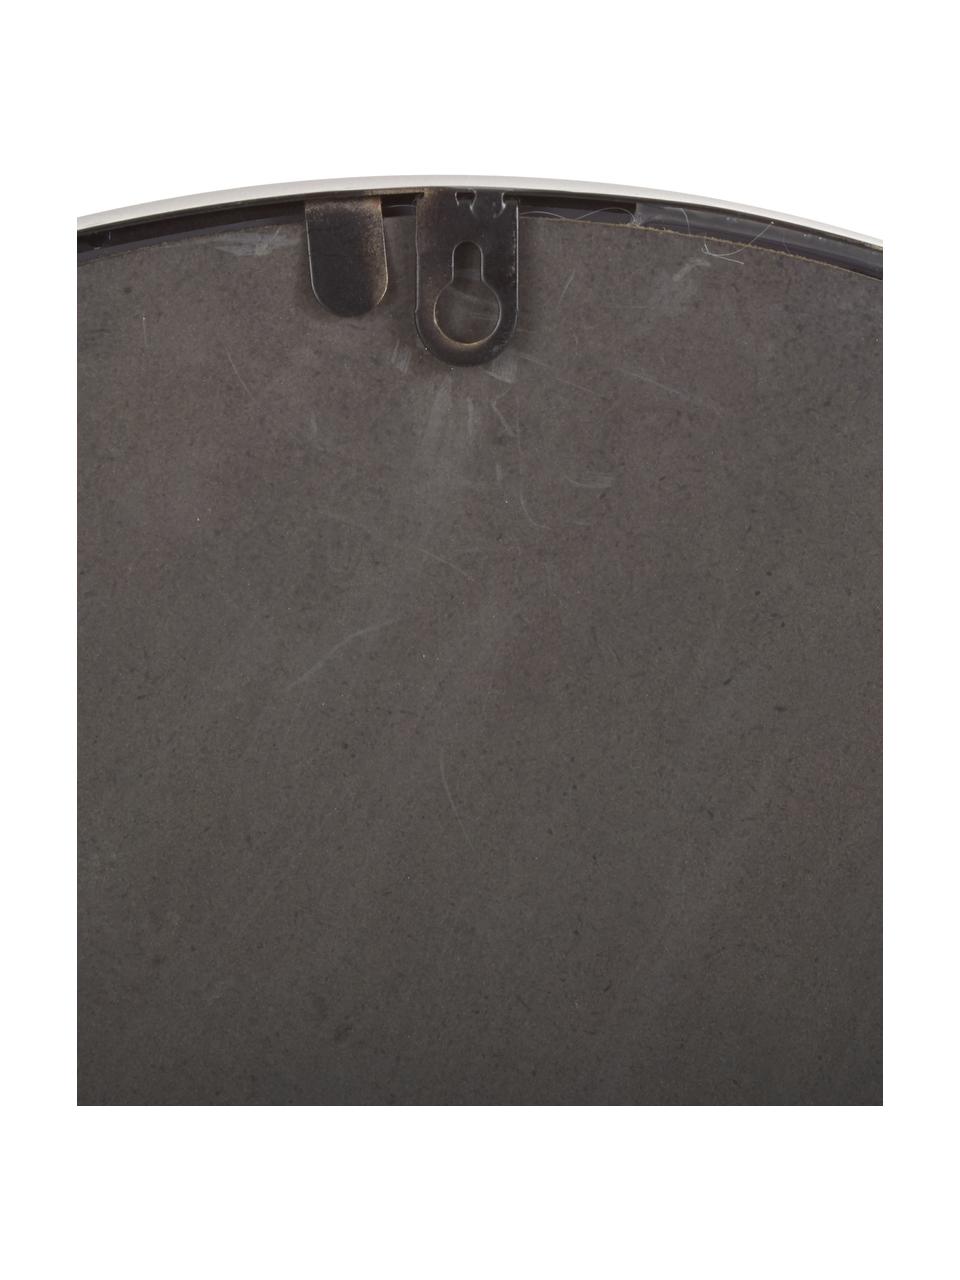 Wandspiegel Grisell mit schwarzem Metallrahmen und Ablagefläche, Rahmen: Metall, beschichtet, Ablagefläche: Glas, Spiegelfläche: Spiegelglas, Schwarz, B 46 x H 77 cm